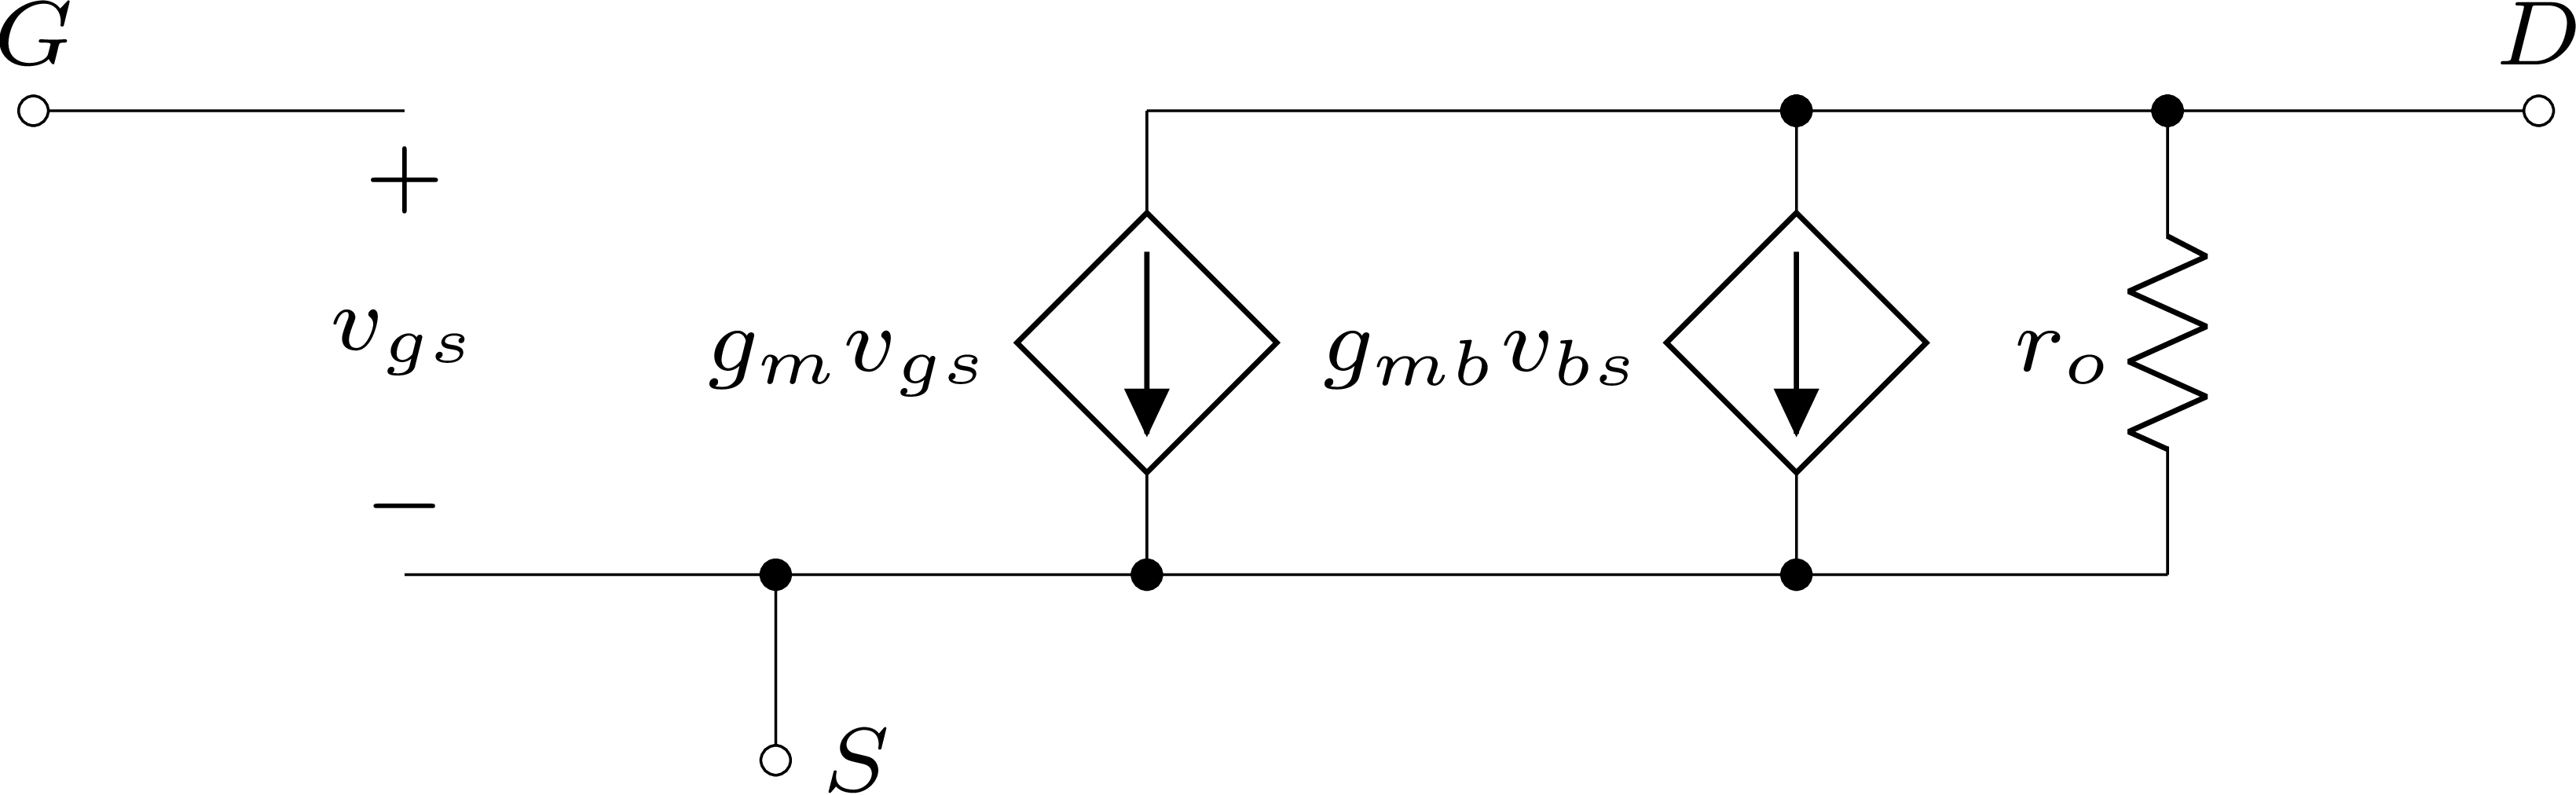 Modelo de pequenos sinais de um MOSFET para baixas frequências.